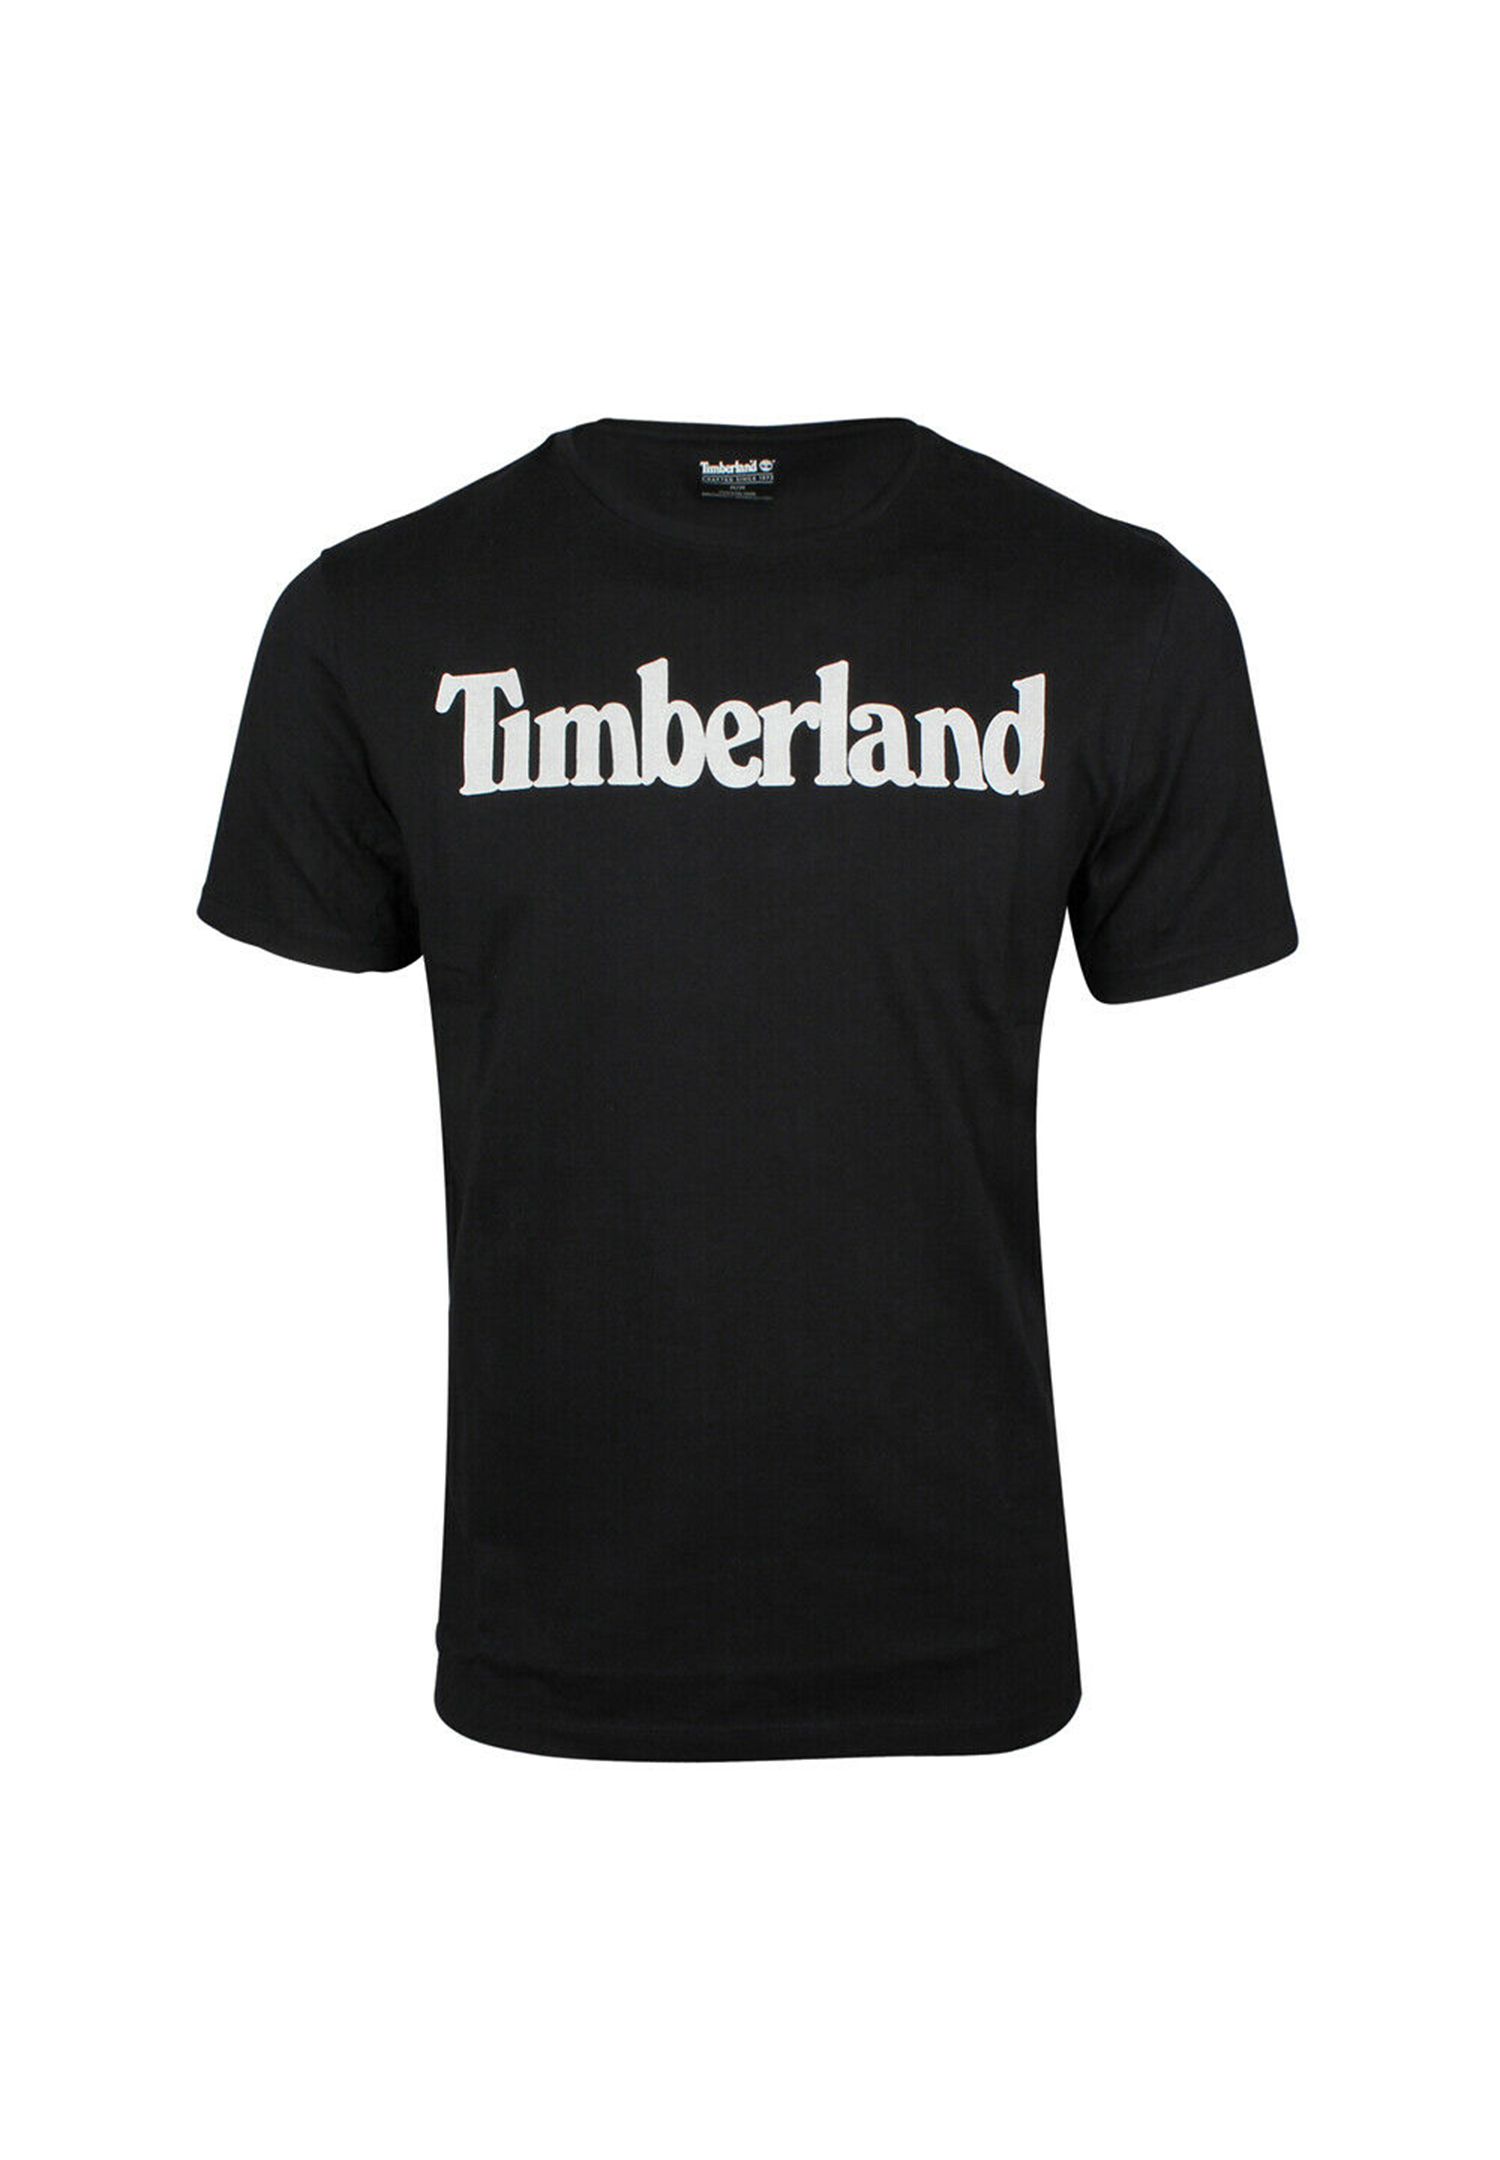 Timberland TFO SS Linear Tee Herren T-Shirt Shirt TB0A2BRN 001 schwarz von Timberland